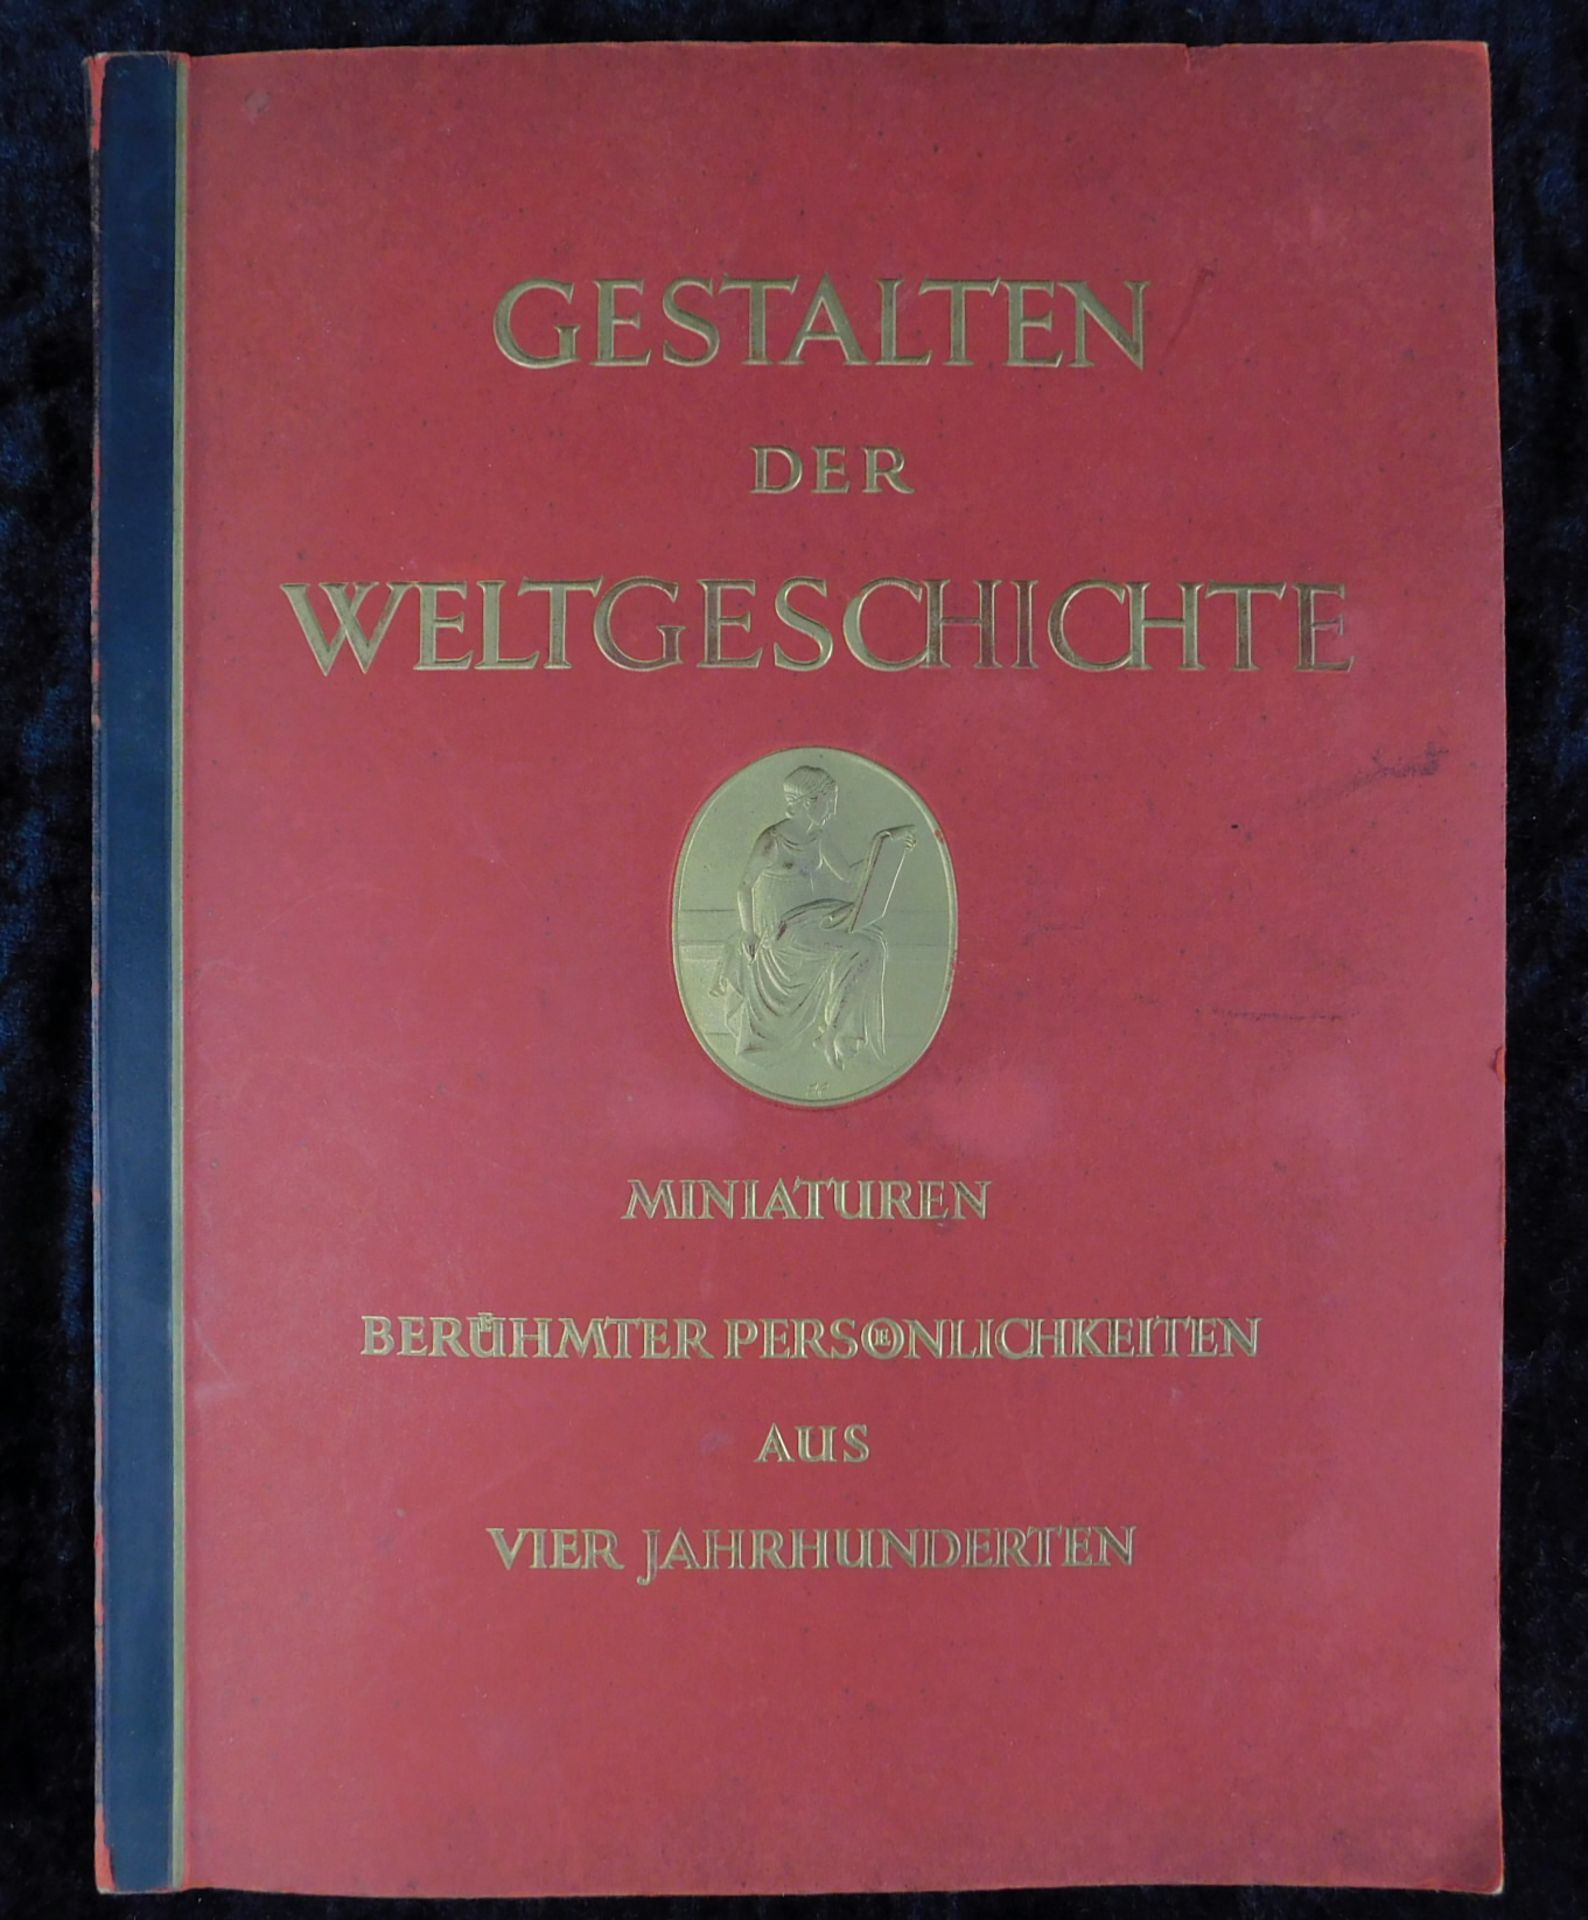 Sammelalbum gebunden "Gestalten der Weltgeschichte", 1933, Cigaretten Bilderdienst, Hamburg-Bahr - Image 4 of 4